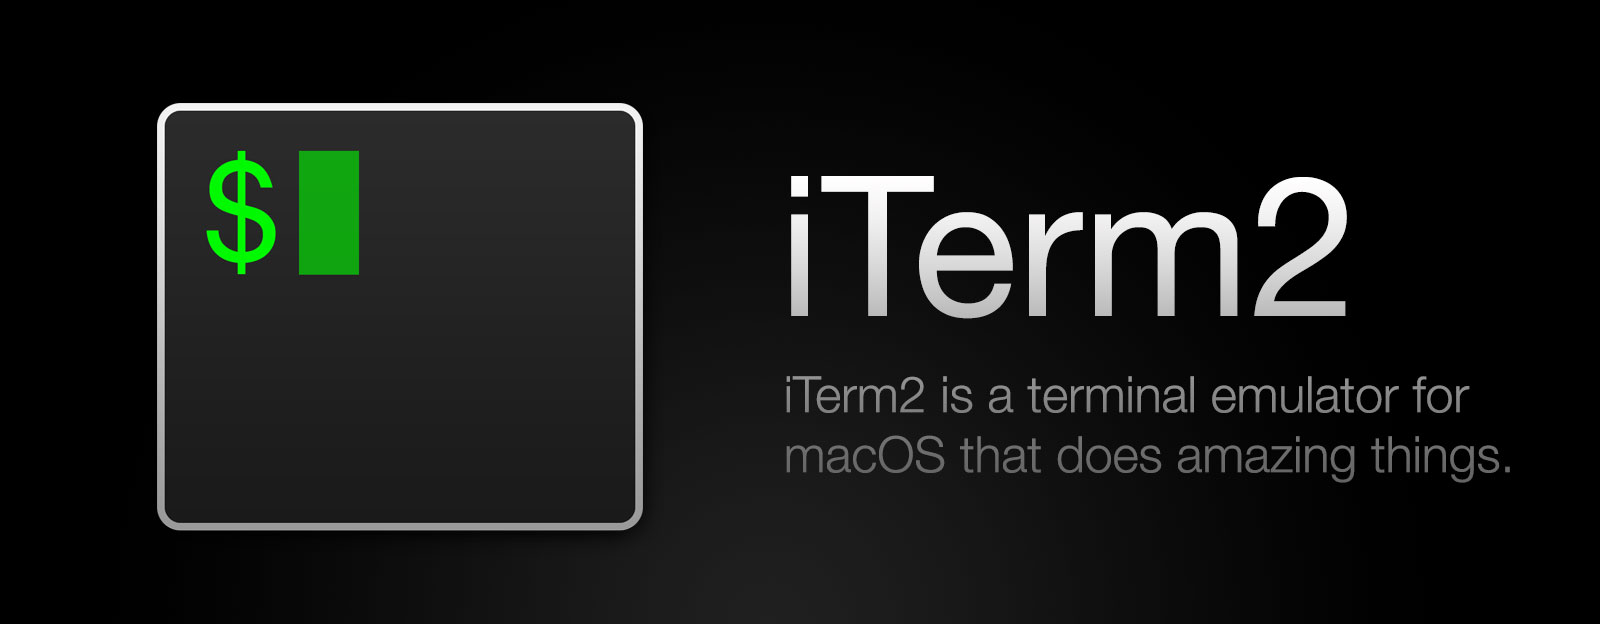 Mac OS 的终端工具 iTerm2 的使用及设置第1张